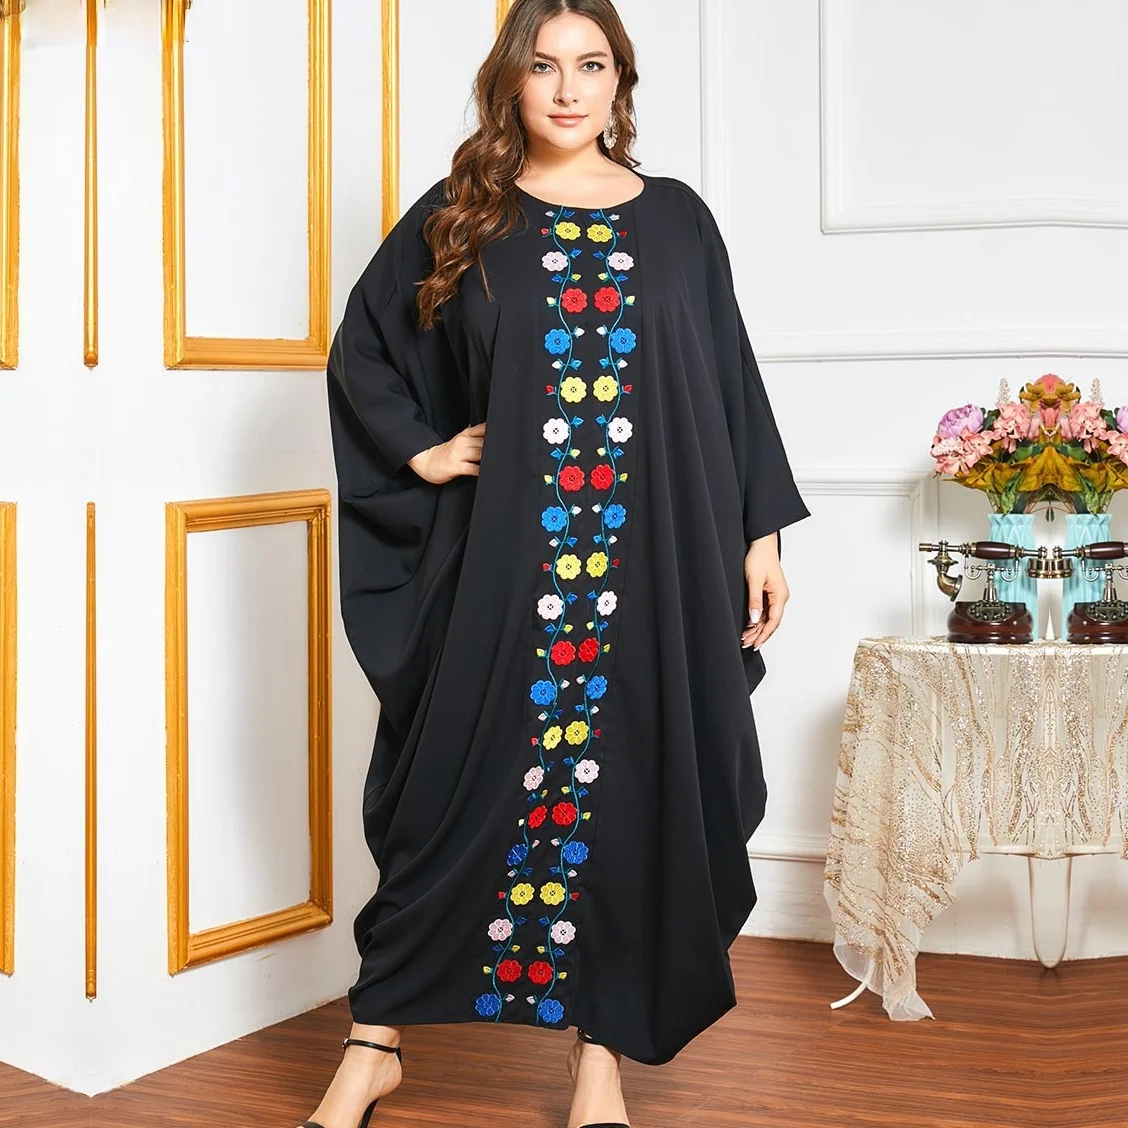 

2021 New Large Size Extra-Large Loose Black Embroidered Bat Sleeve Abaya Muslim Dubai Long Sleeve Women's Fashion Dress